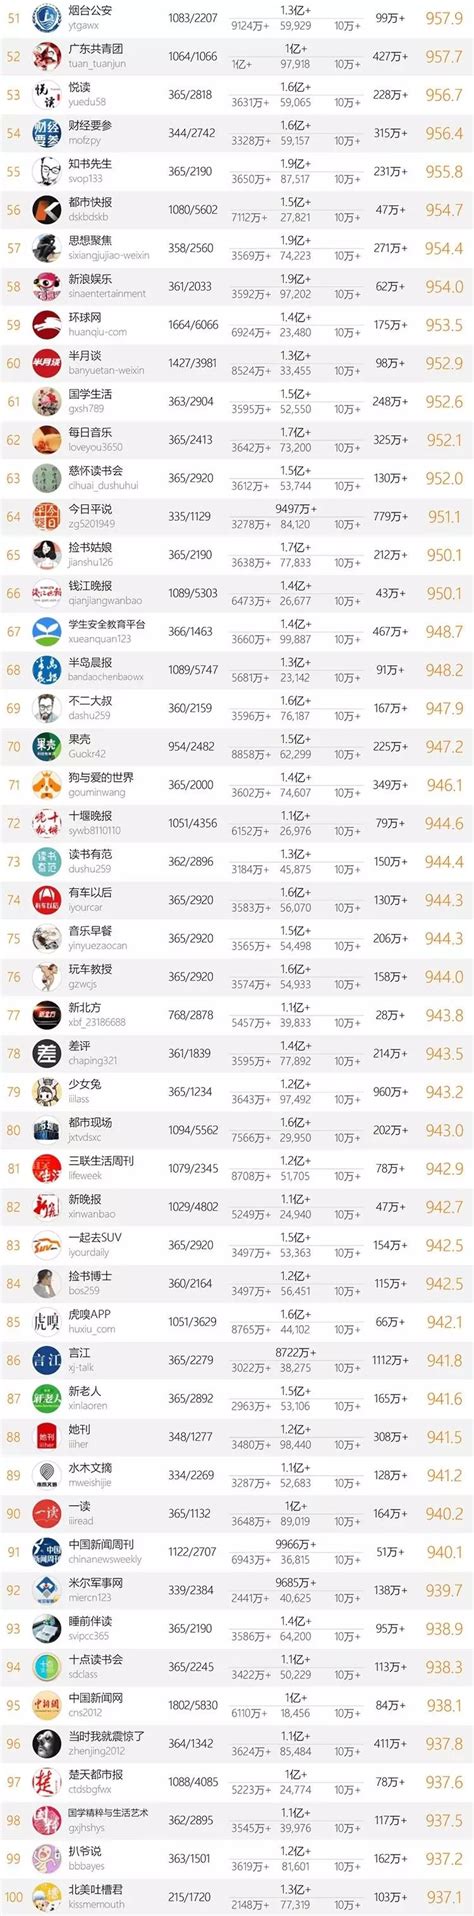 十大微信公众号排名榜-2018中国微信500强排名榜(阅读量排序)_热点 ...